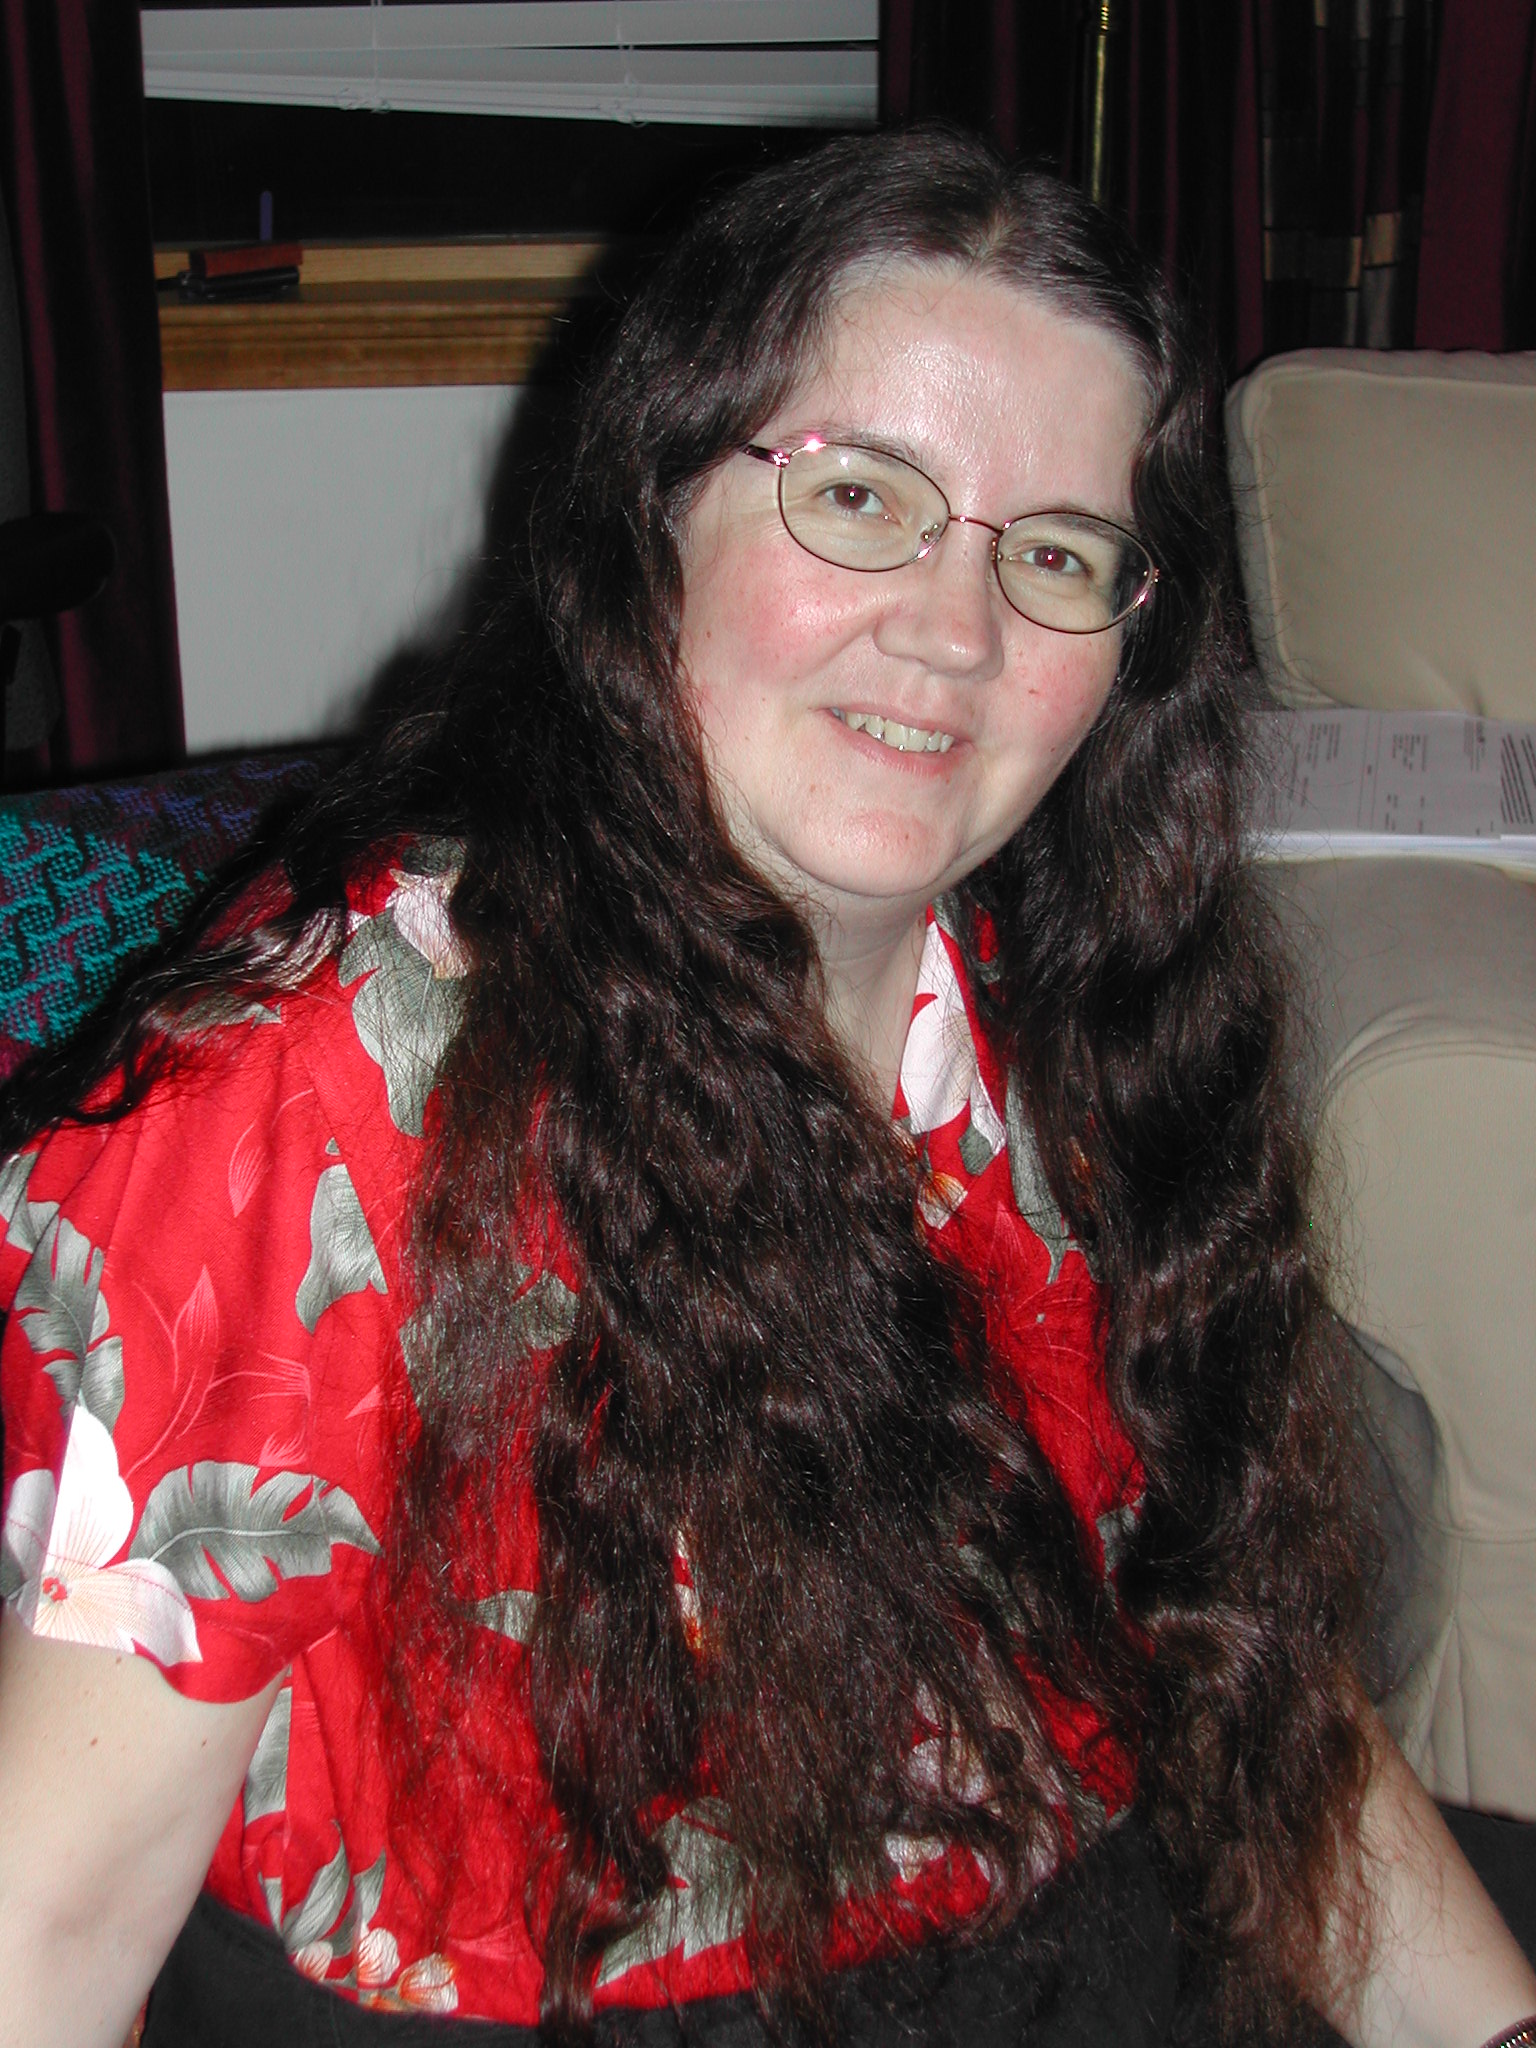 Jane on Aug 7, 2006